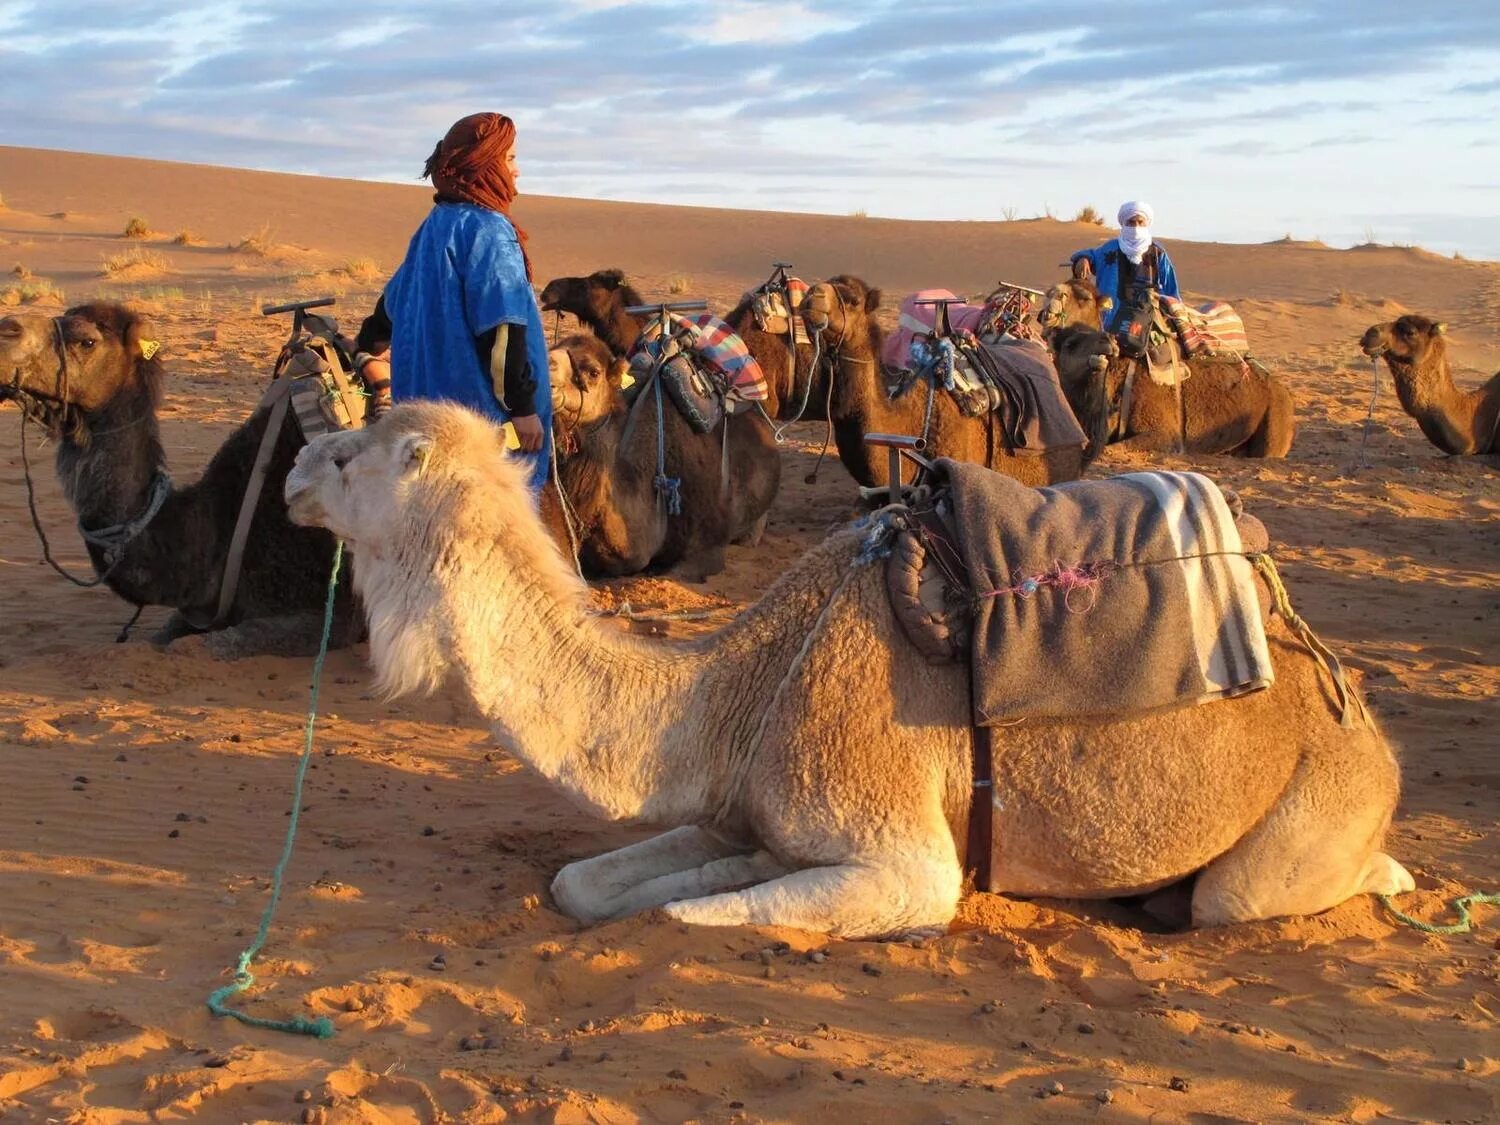 Бедуины Марокко. Караван в пустыне Каракум. Караваны верблюдов с бедуинами. Караван марокканских верблюдов дромедаров.